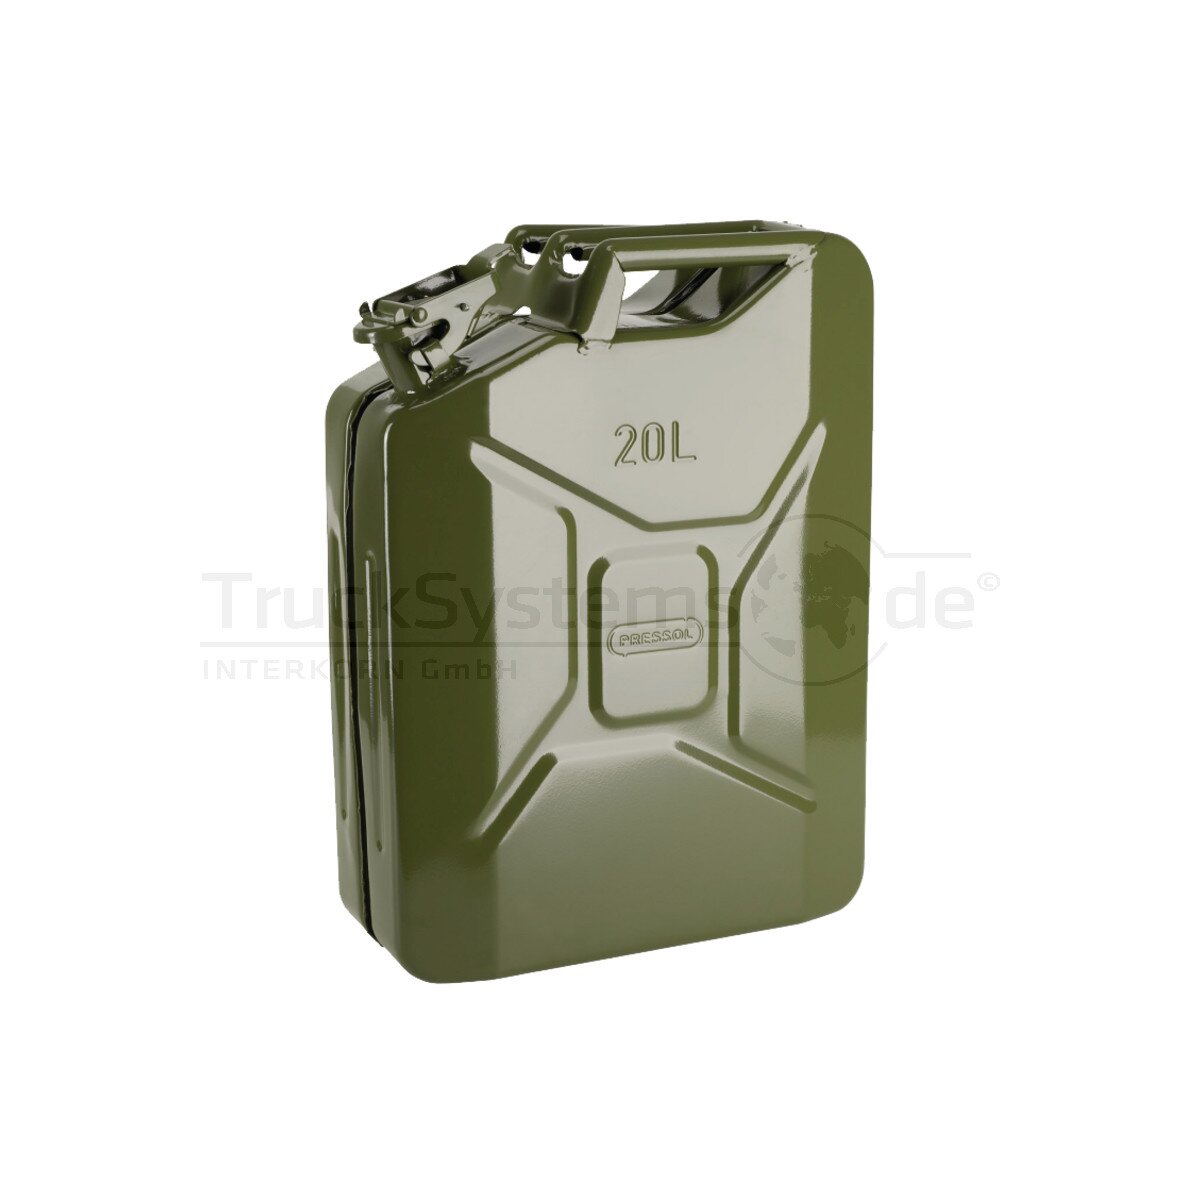 Benzinkanister UN oliv-grün Metall 20l - 10.127 - 4007928101273